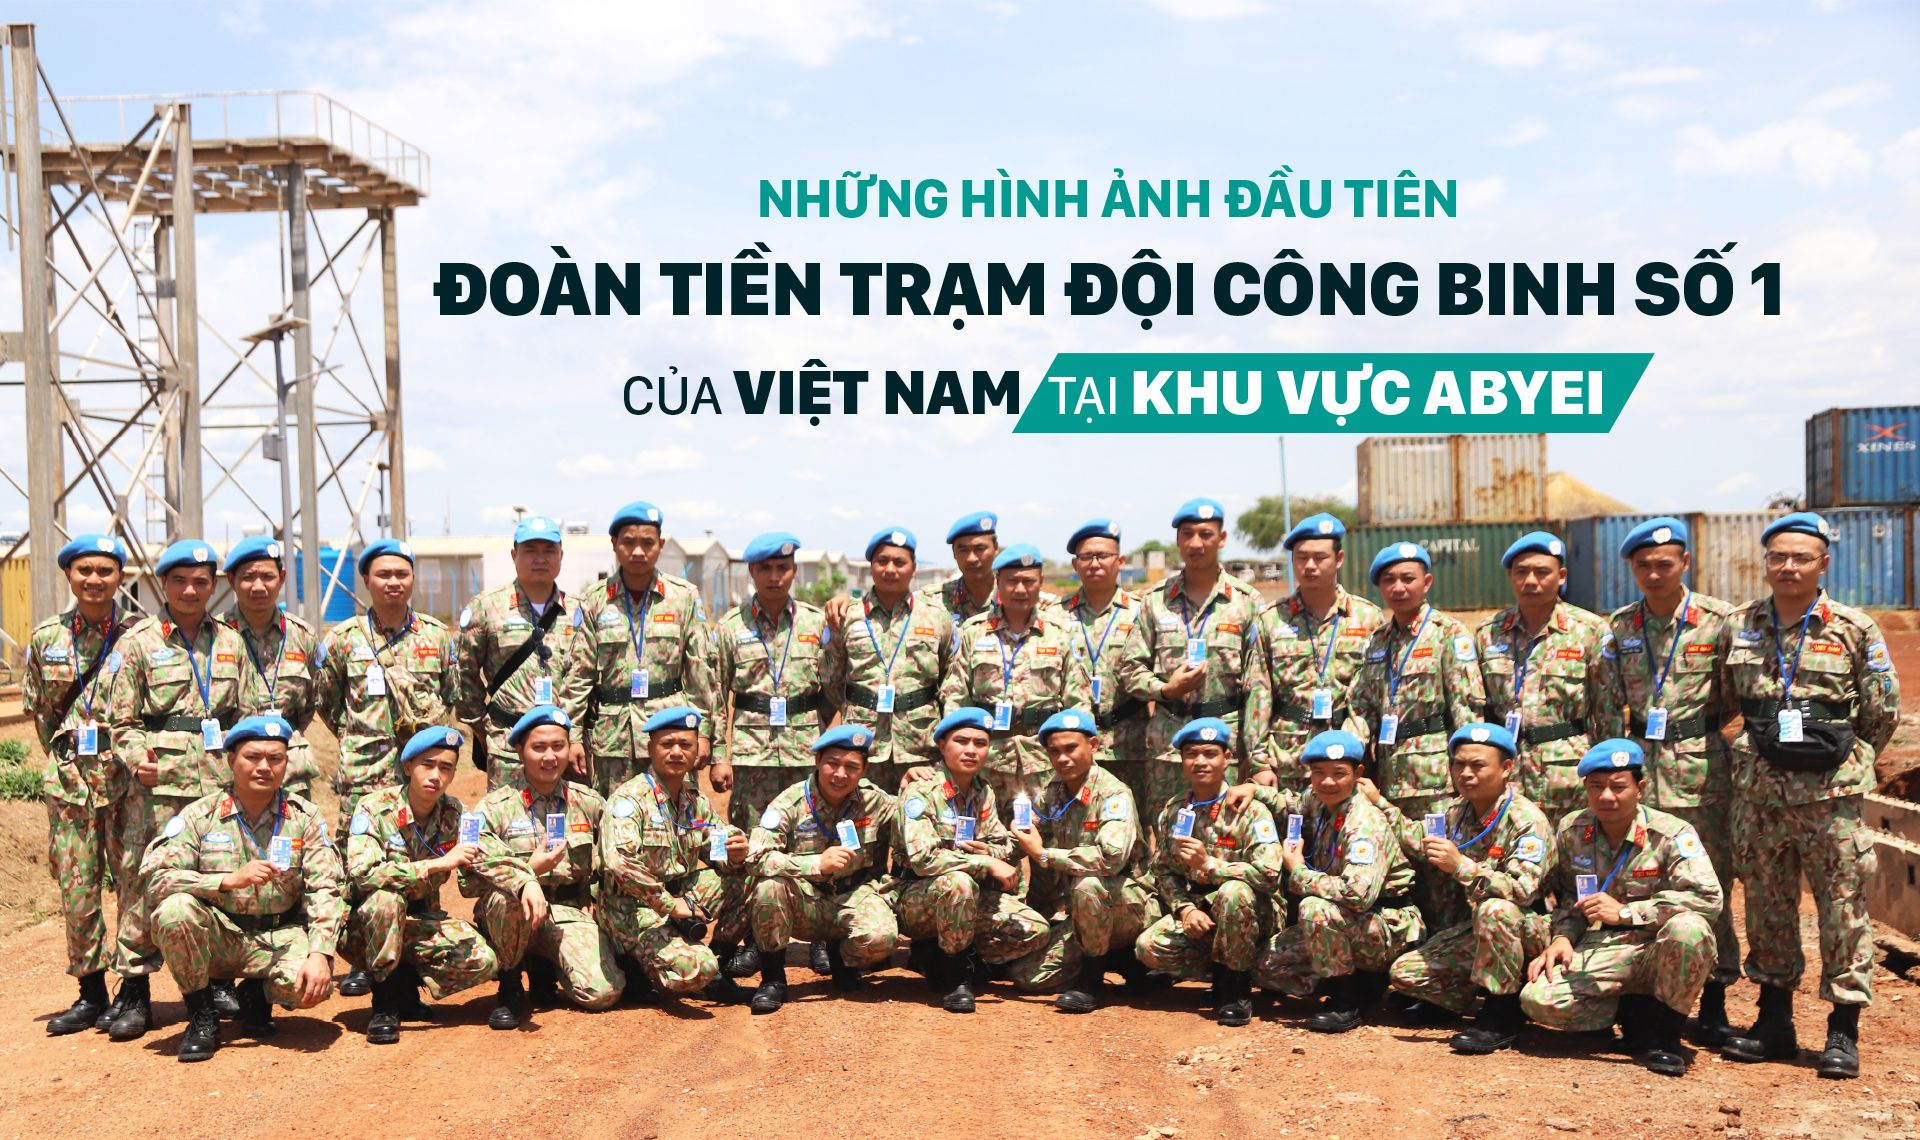 Những hình ảnh đầu tiên Đoàn tiền trạm Đội Công binh số 1 của Việt Nam tại khu vực Abyei